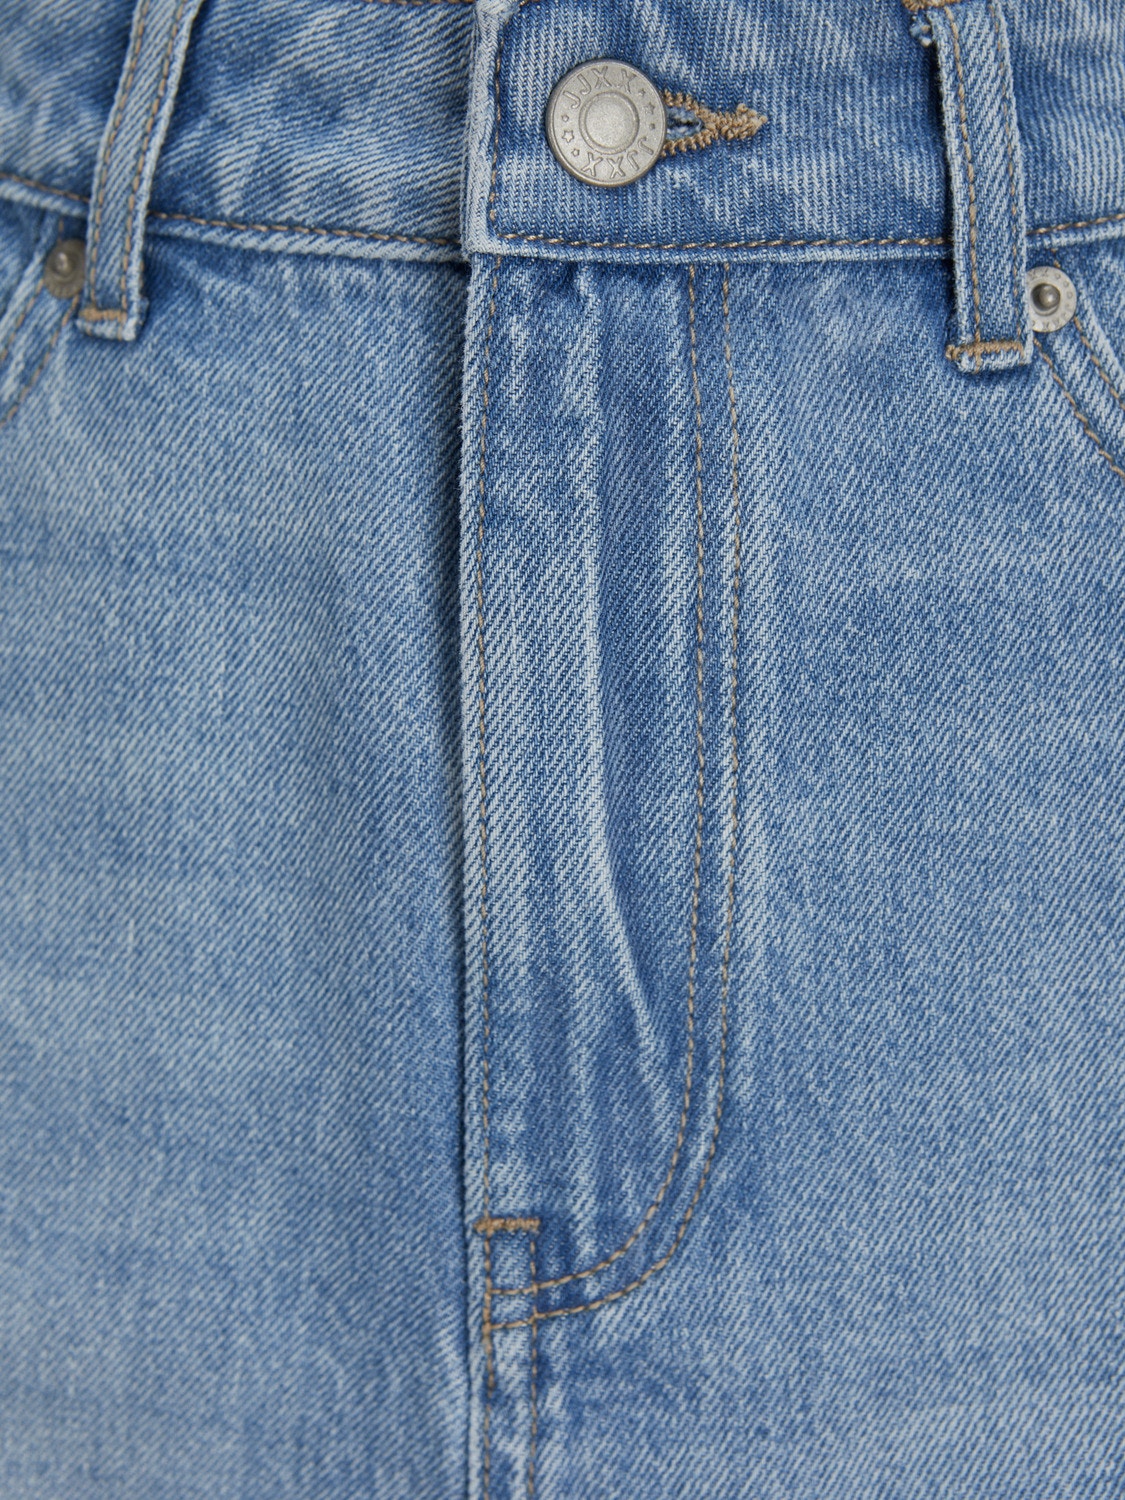 JJXX JXAURA Spódnica jeansowa -Light Blue Denim - 12248571